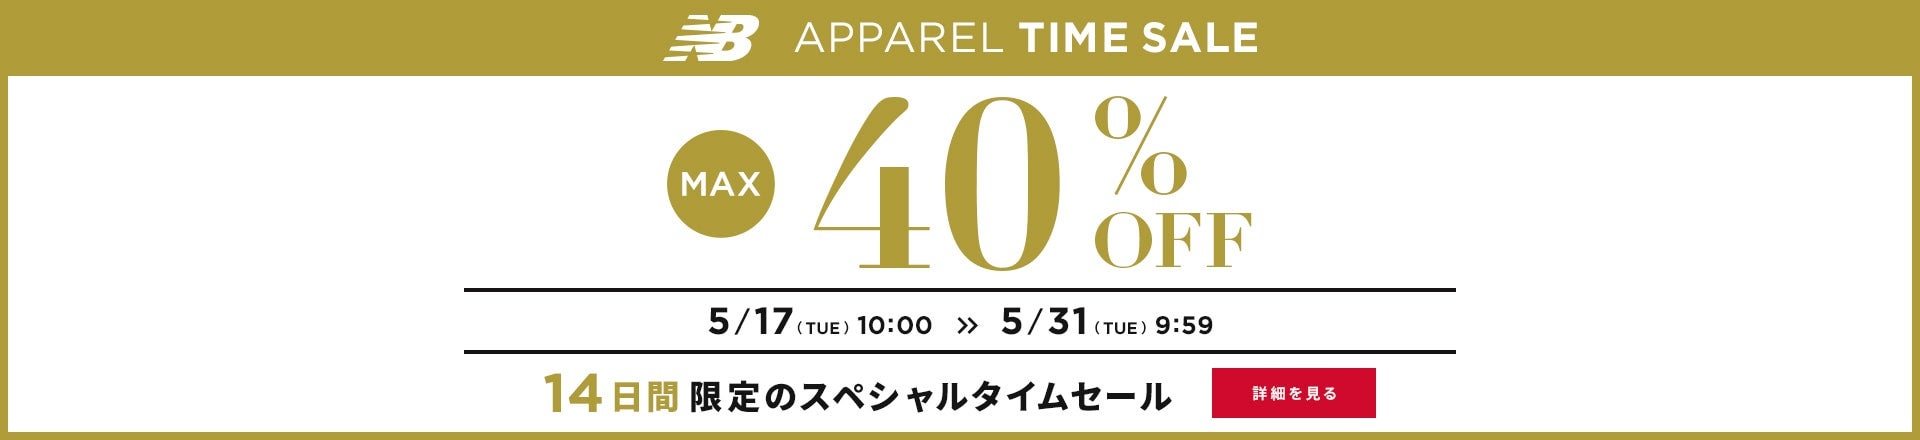 Apparel Time Sale